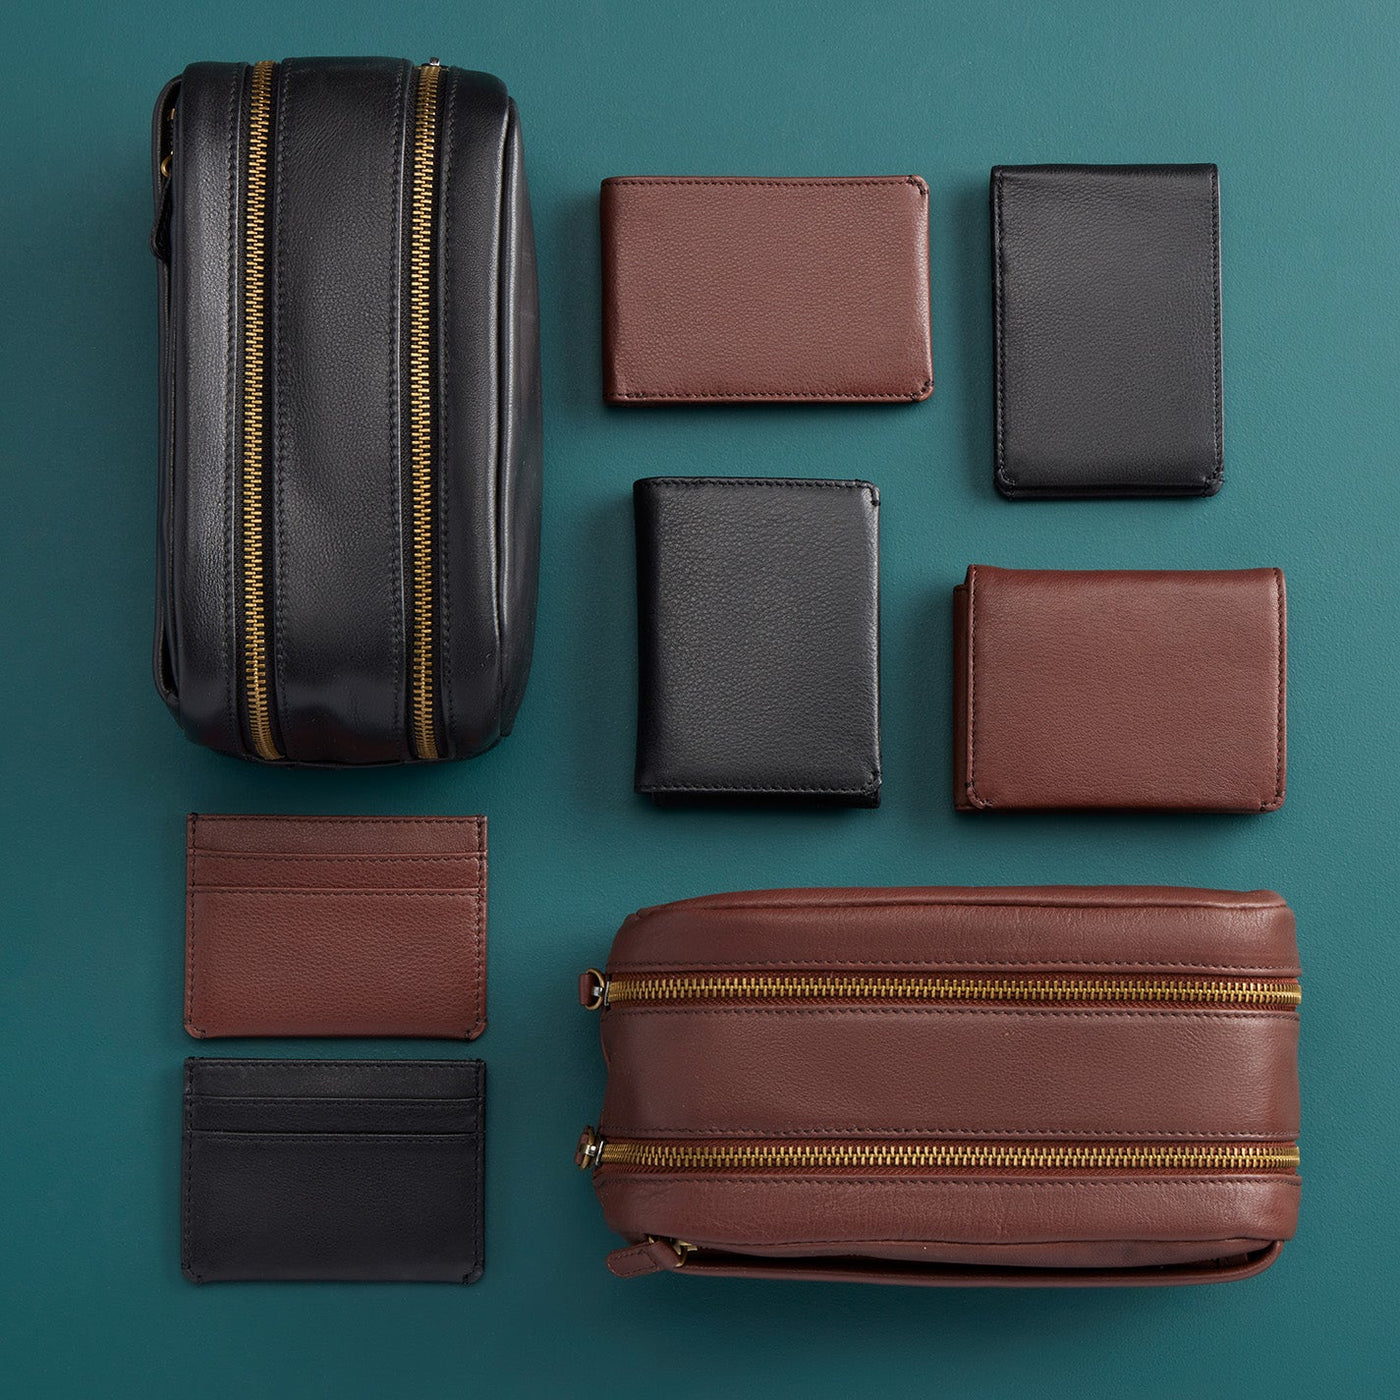 Men's Flap Wallet in Silk Napa Leather - Black